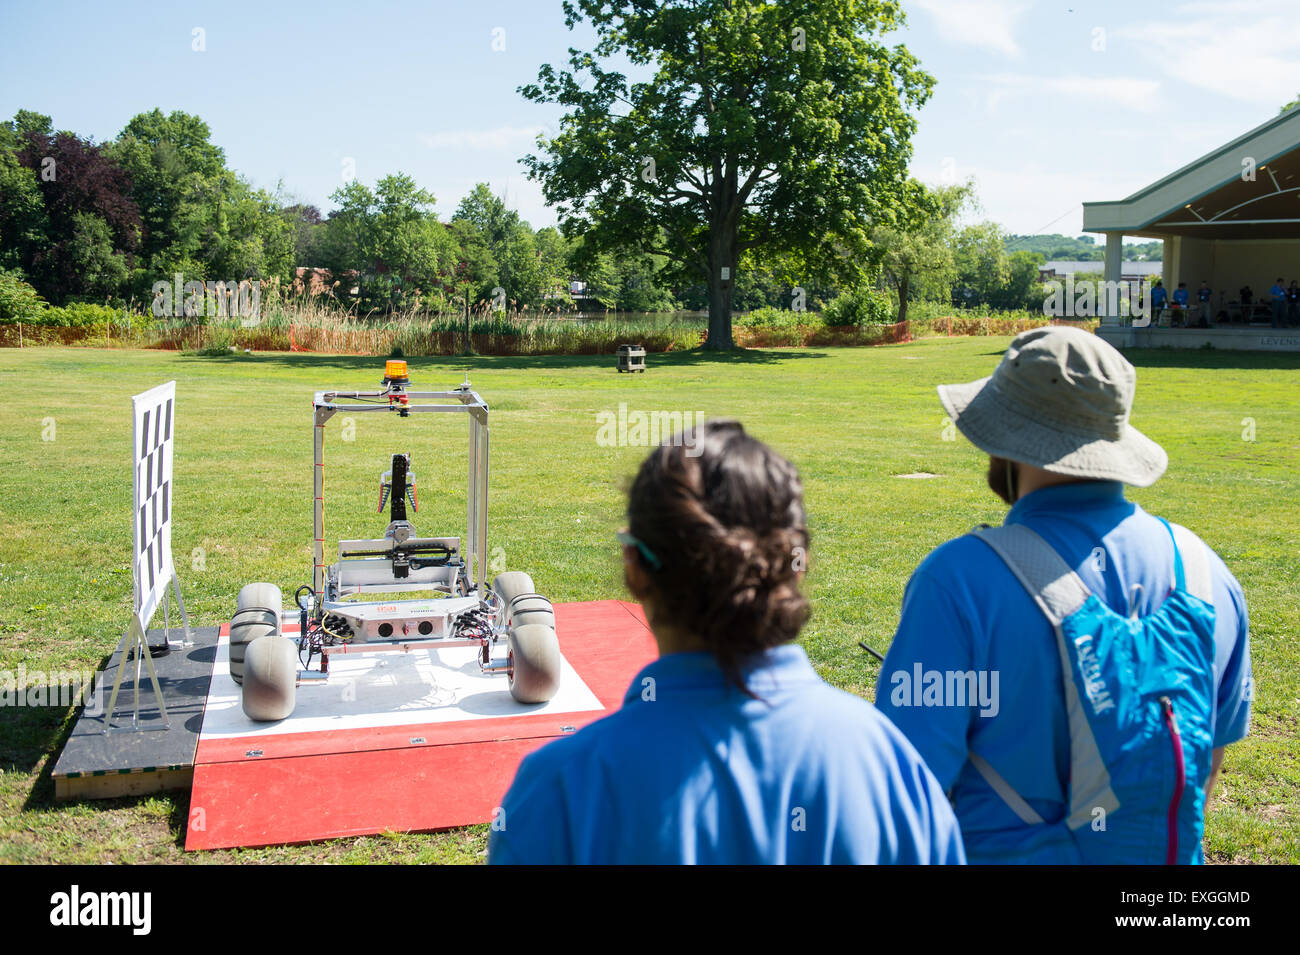 L'Oregon State University de l'équipe Mars Rover robot est visible sur la plate-forme de départ lors de sa tentative de le défi de niveau 1 au cours de l'échantillon 2015 Défi Robot de retour, le mercredi 10 juin 2015 à Worcester Polytechnic Institute (WPI) à Worcester, Mass., 16 équipes sont en compétition pour un montant de 1,5 millions de bourse de la NASA. Les équipes seront tenus de démontrer des robots autonomes capables de localiser et de prélever des échantillons d'une vaste et diversifié, de l'exploitation sans contrôle de l'homme. L'objectif de ce Centenaire de la NASA-WPI défi consiste à encourager les innovations dans la navigation autonome et roboti Banque D'Images